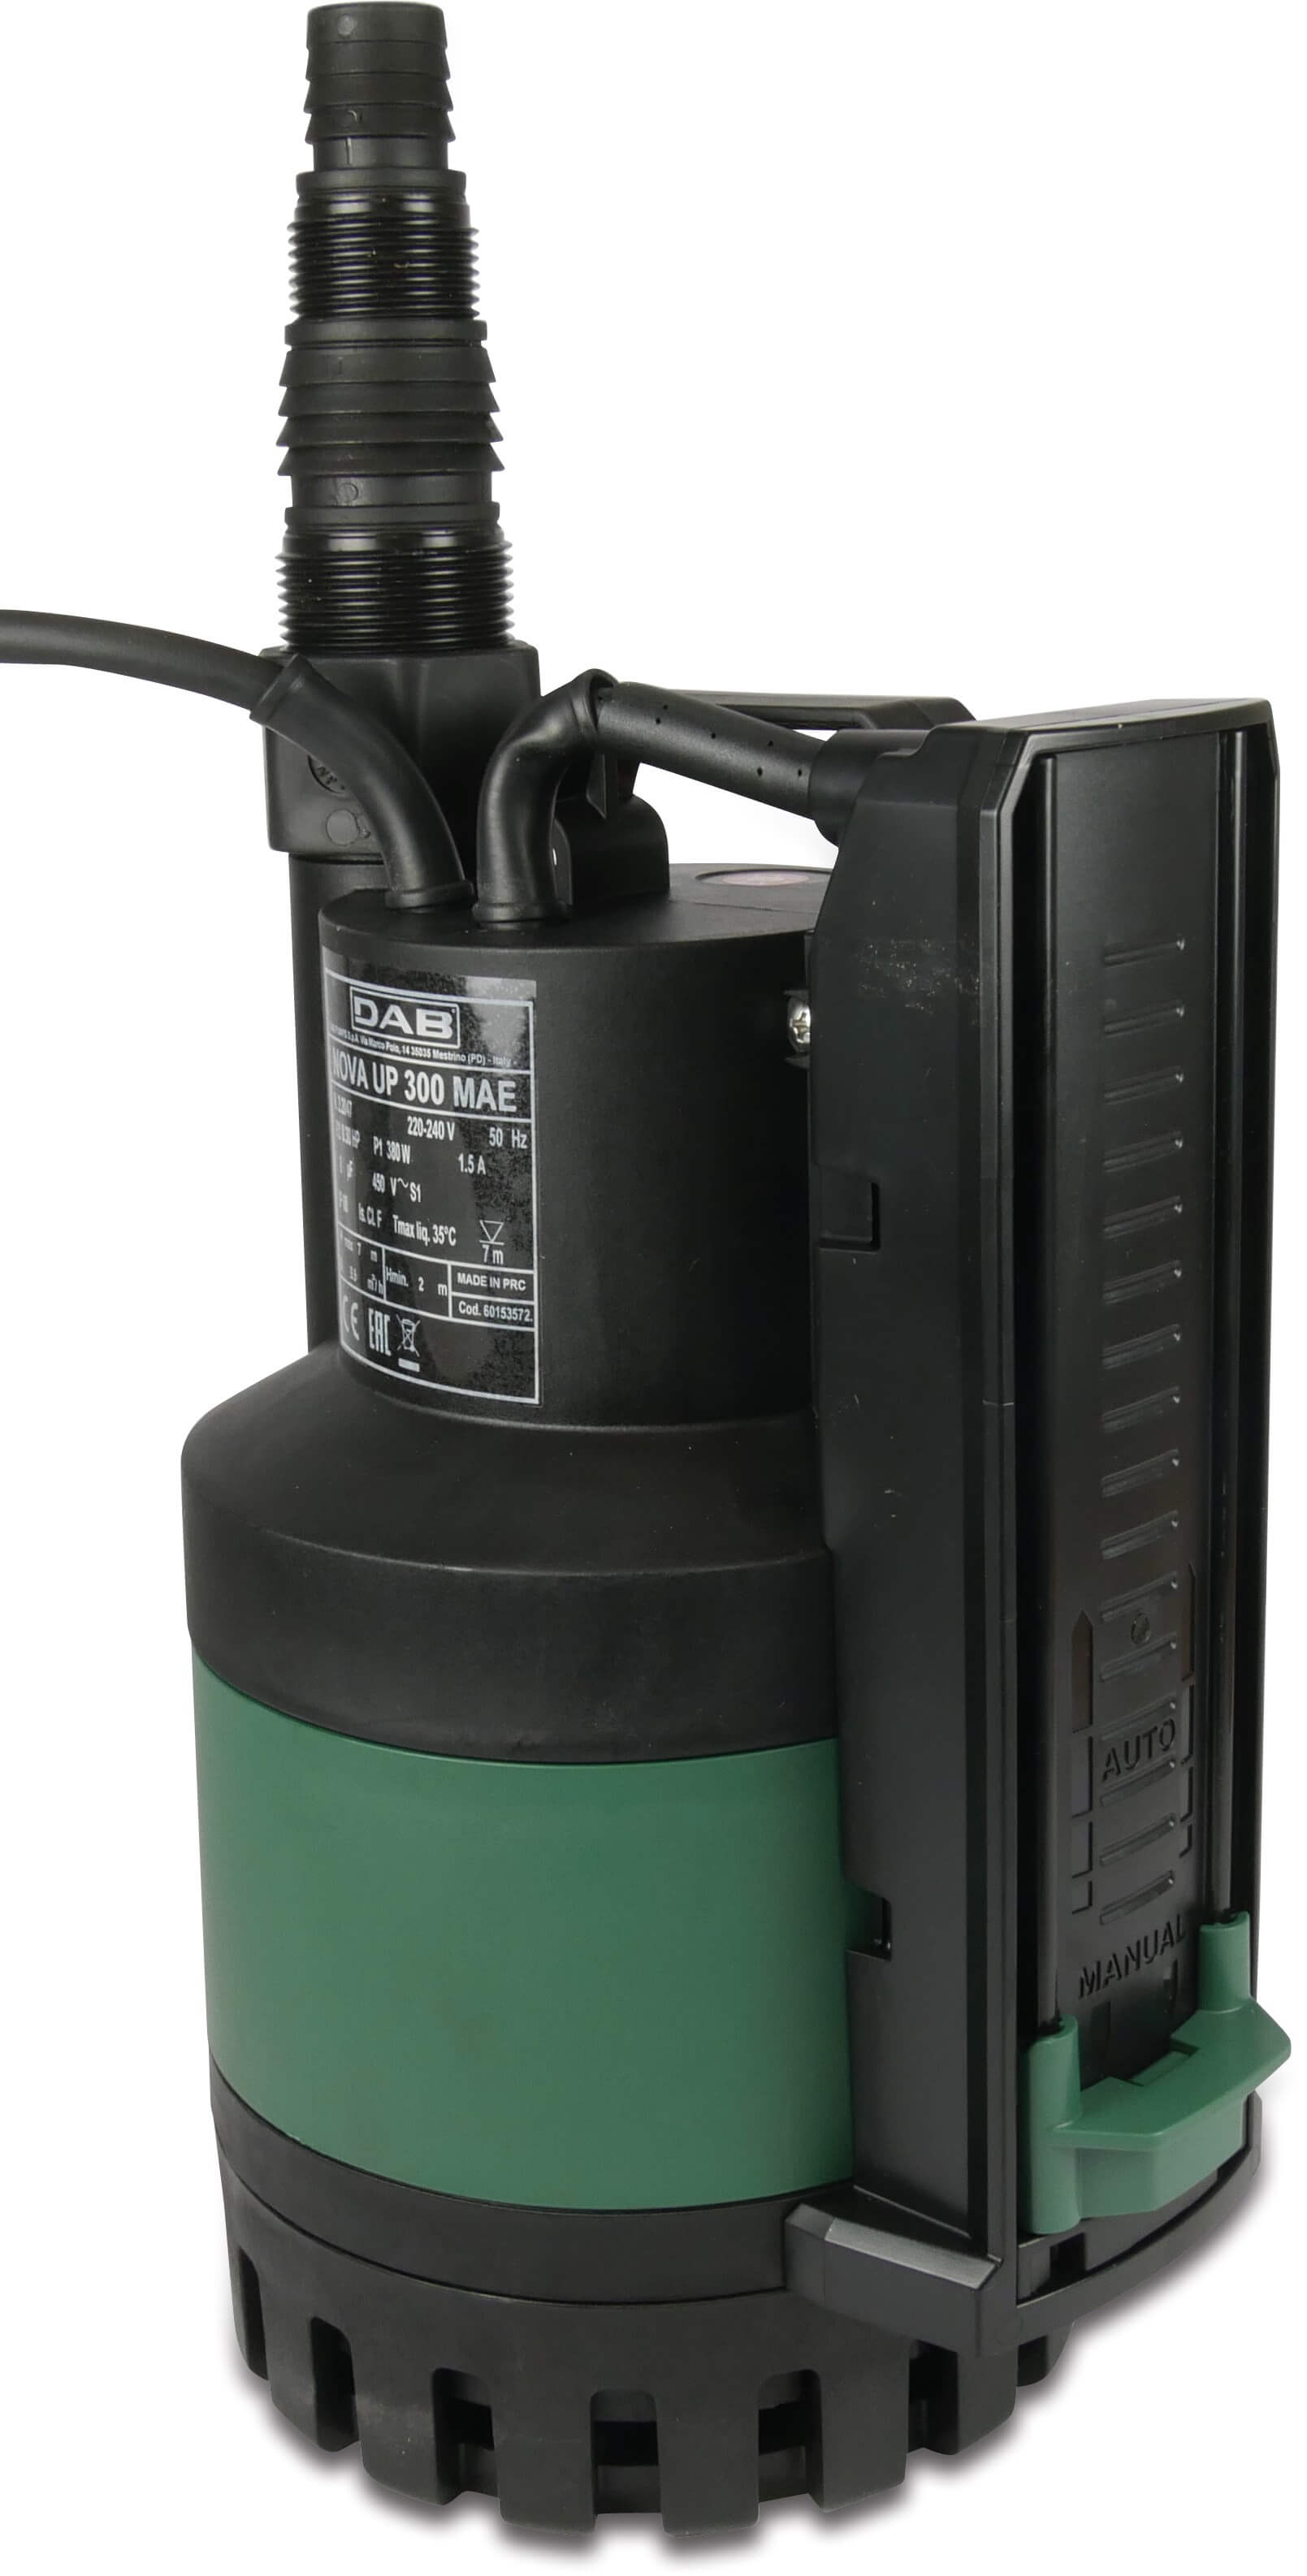 DAB Dränkbar pump förstärkt plast 1" utvändig gänga 1,5A 230VAC type Nova UP 300 M-AE